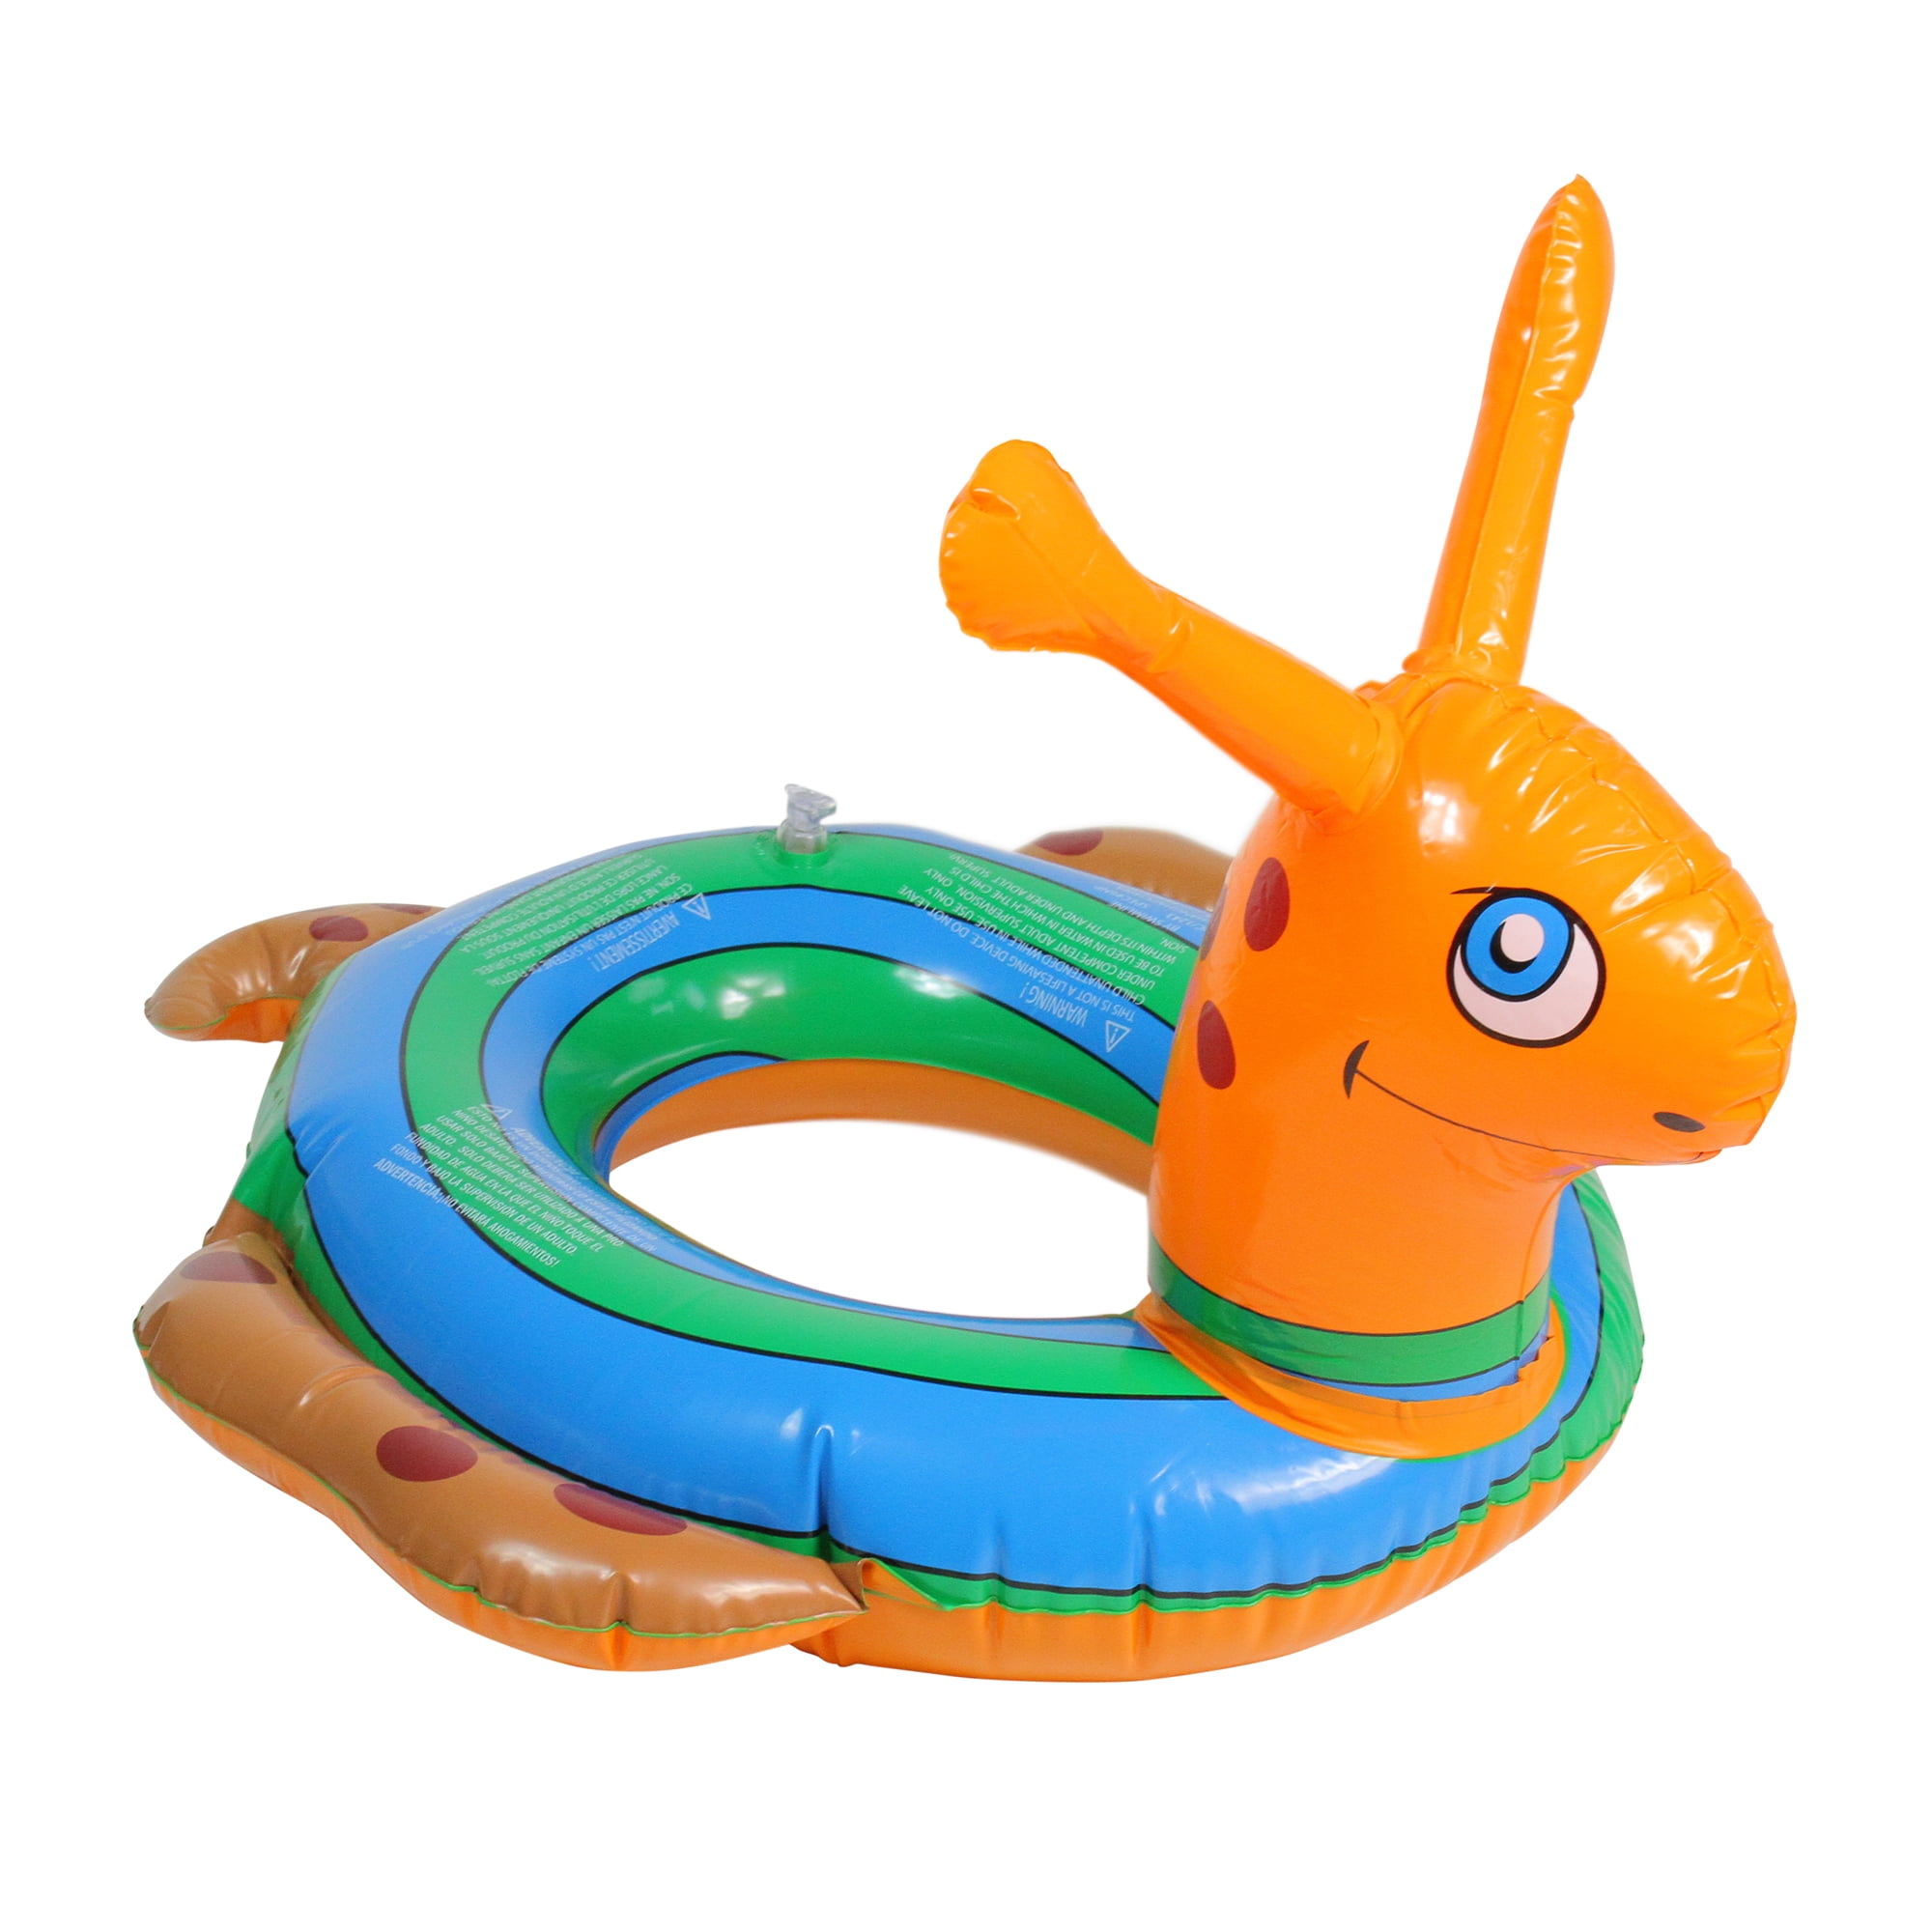 Details about   Splash Toy Fish and Matching Splash Ring Pool Toy Party Luau Orange 